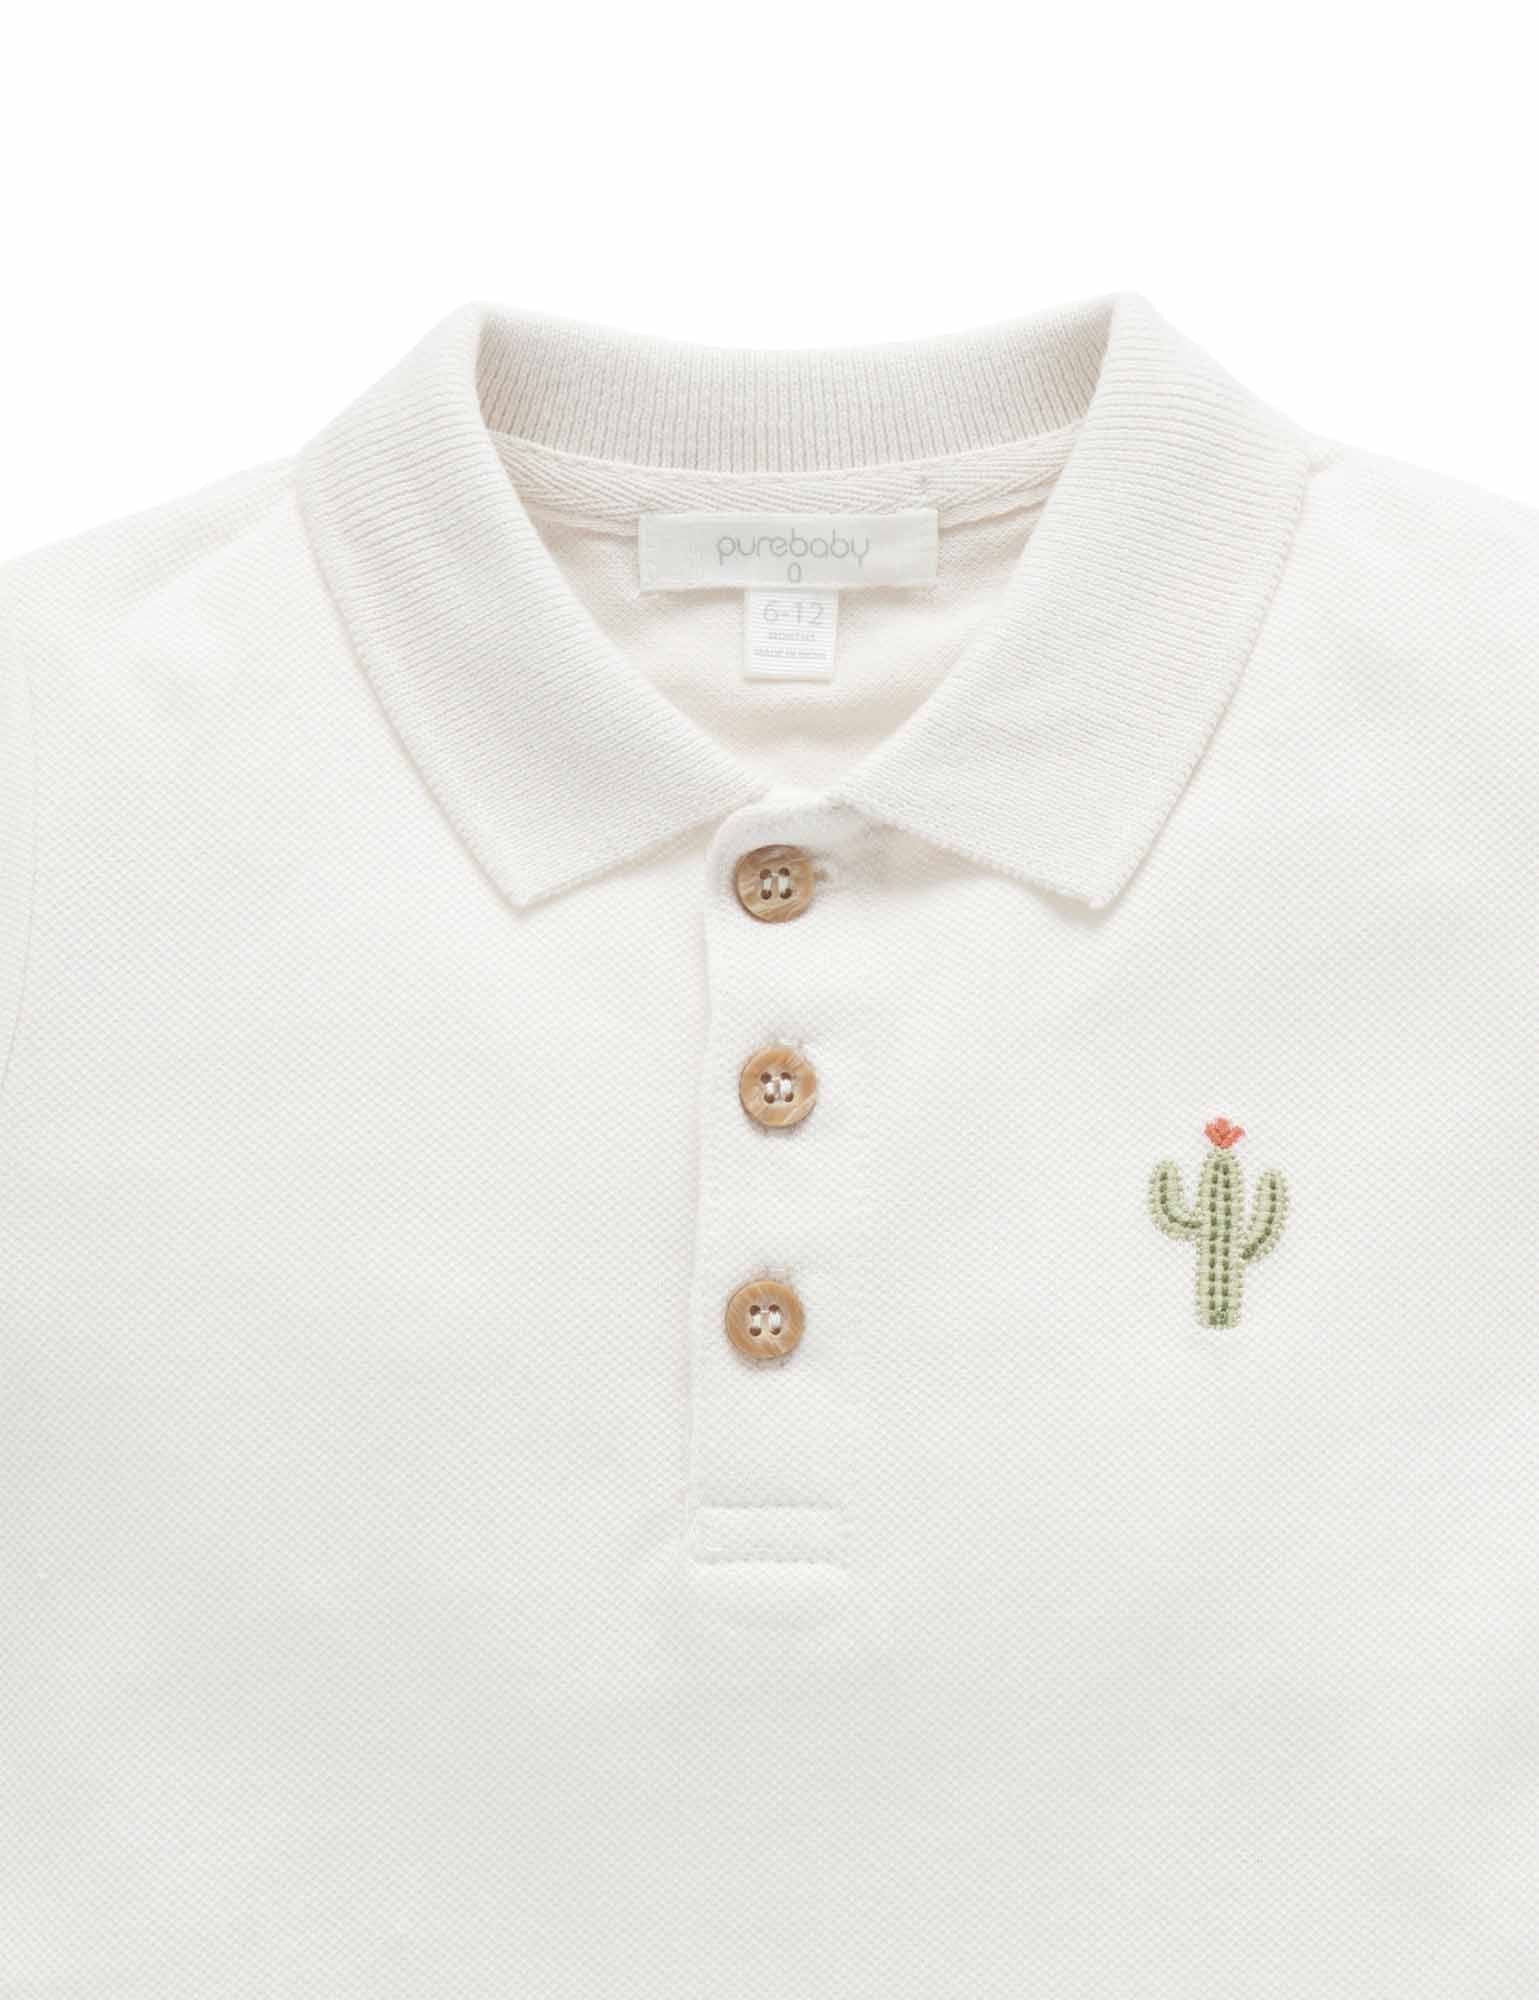 Linen Blend Embroidered Shirt - Purebaby